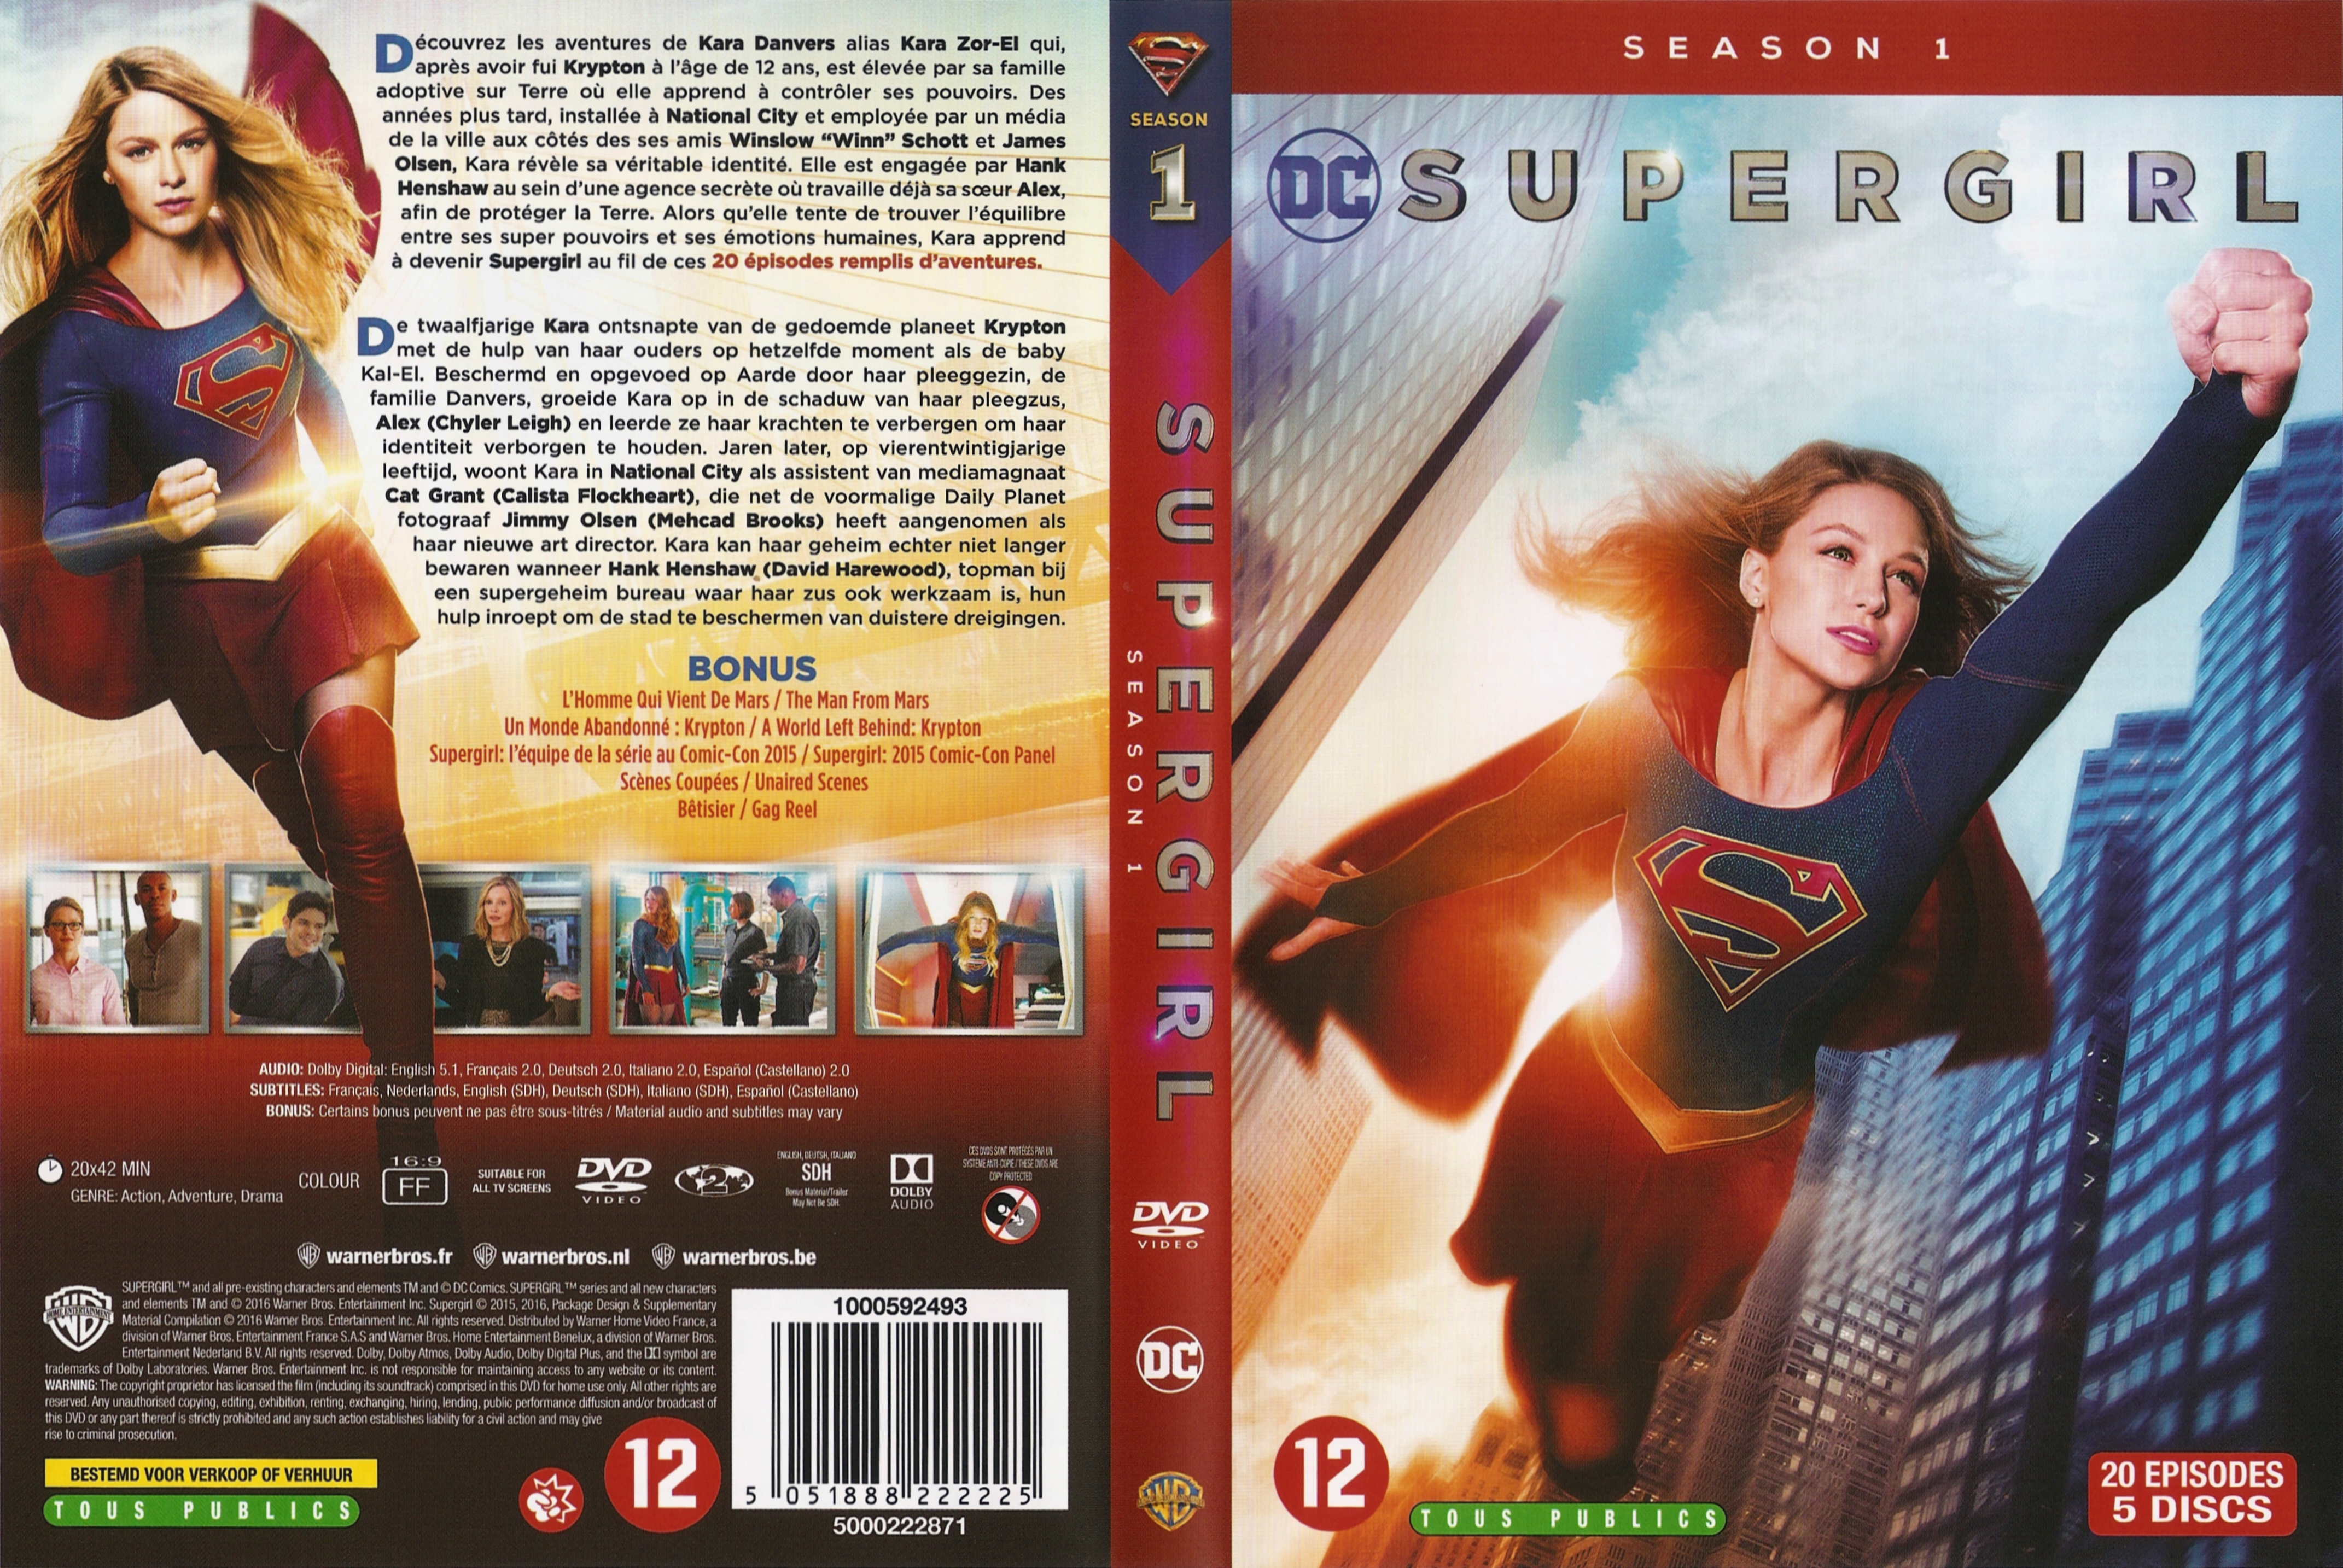 Jaquette DVD Supergirl saison 1